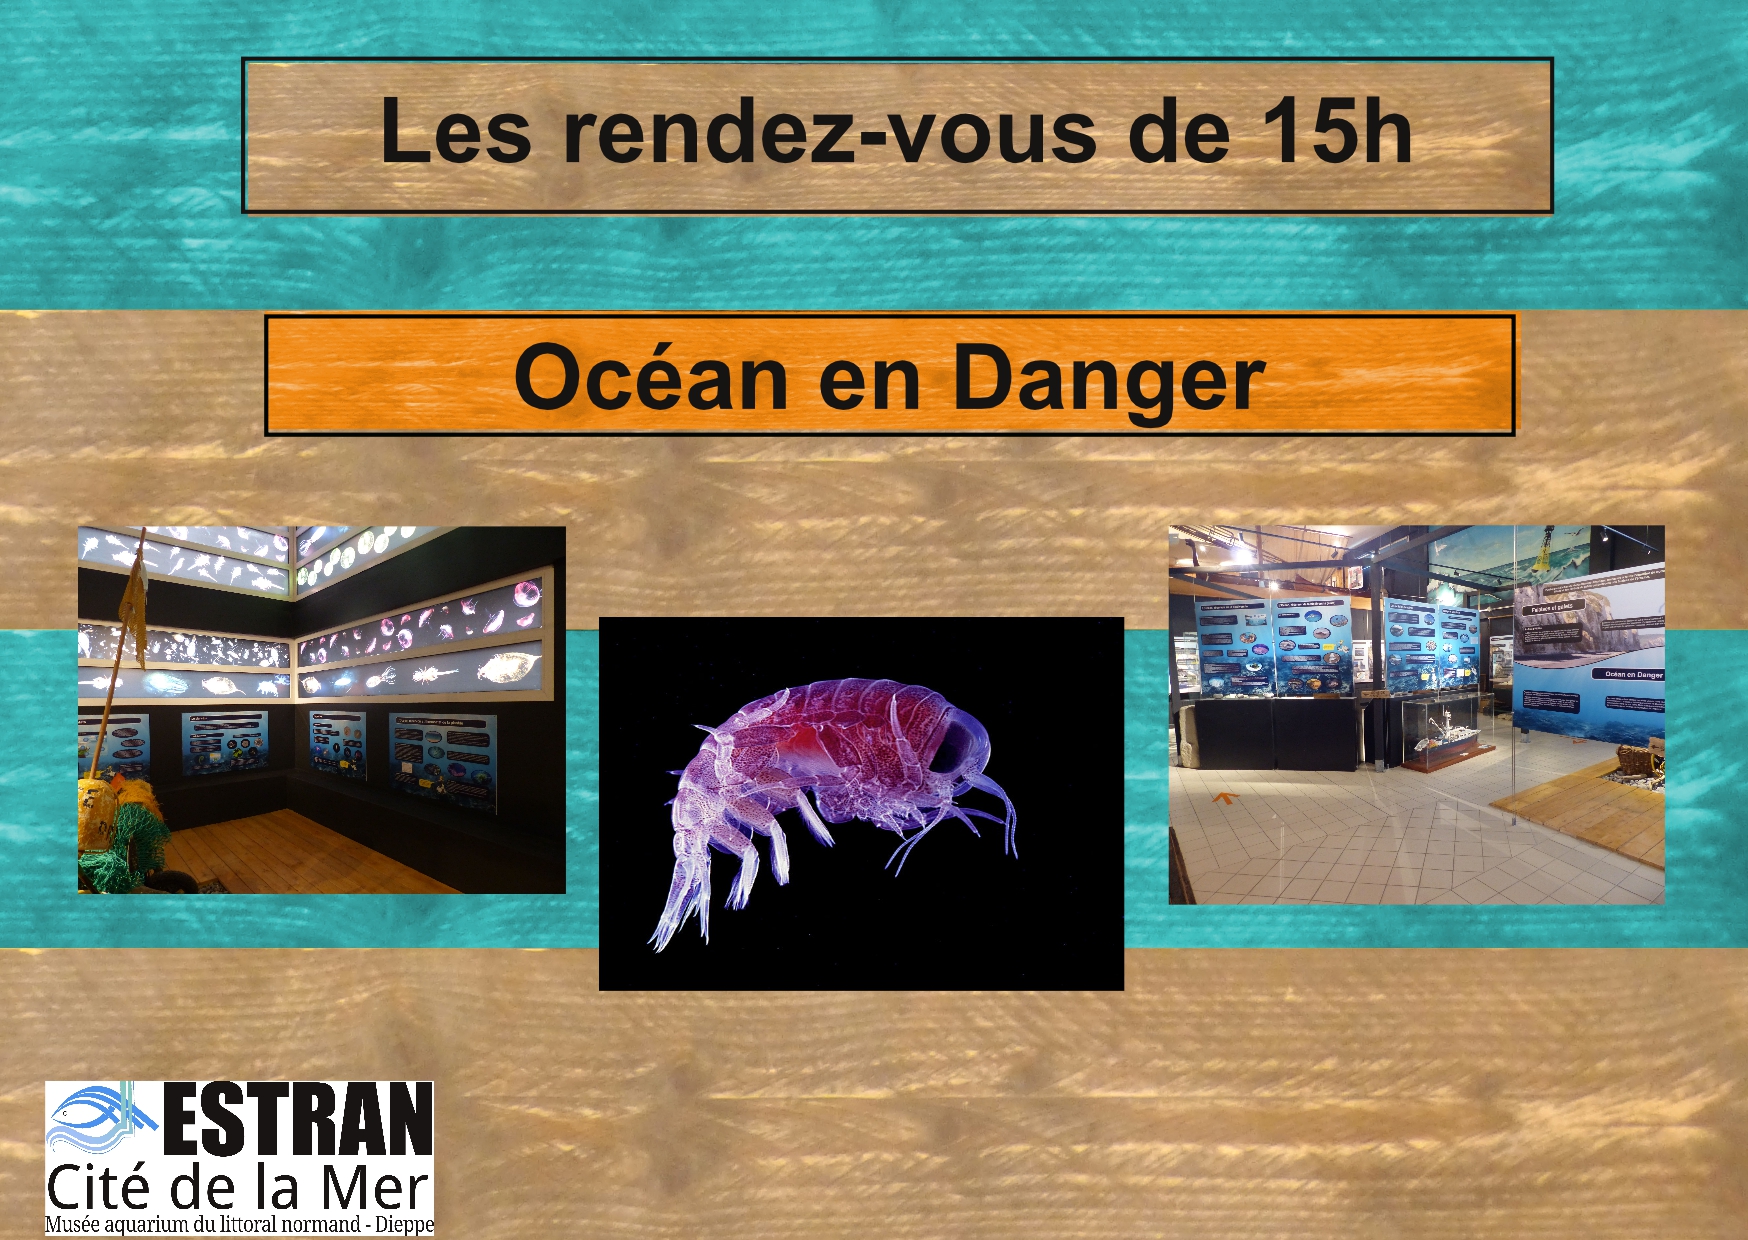 Les Petits Rendez-Vous de 15h "Océan en Danger" @ ESTRAN - Cité de la Mer | Dieppe | Normandie | France